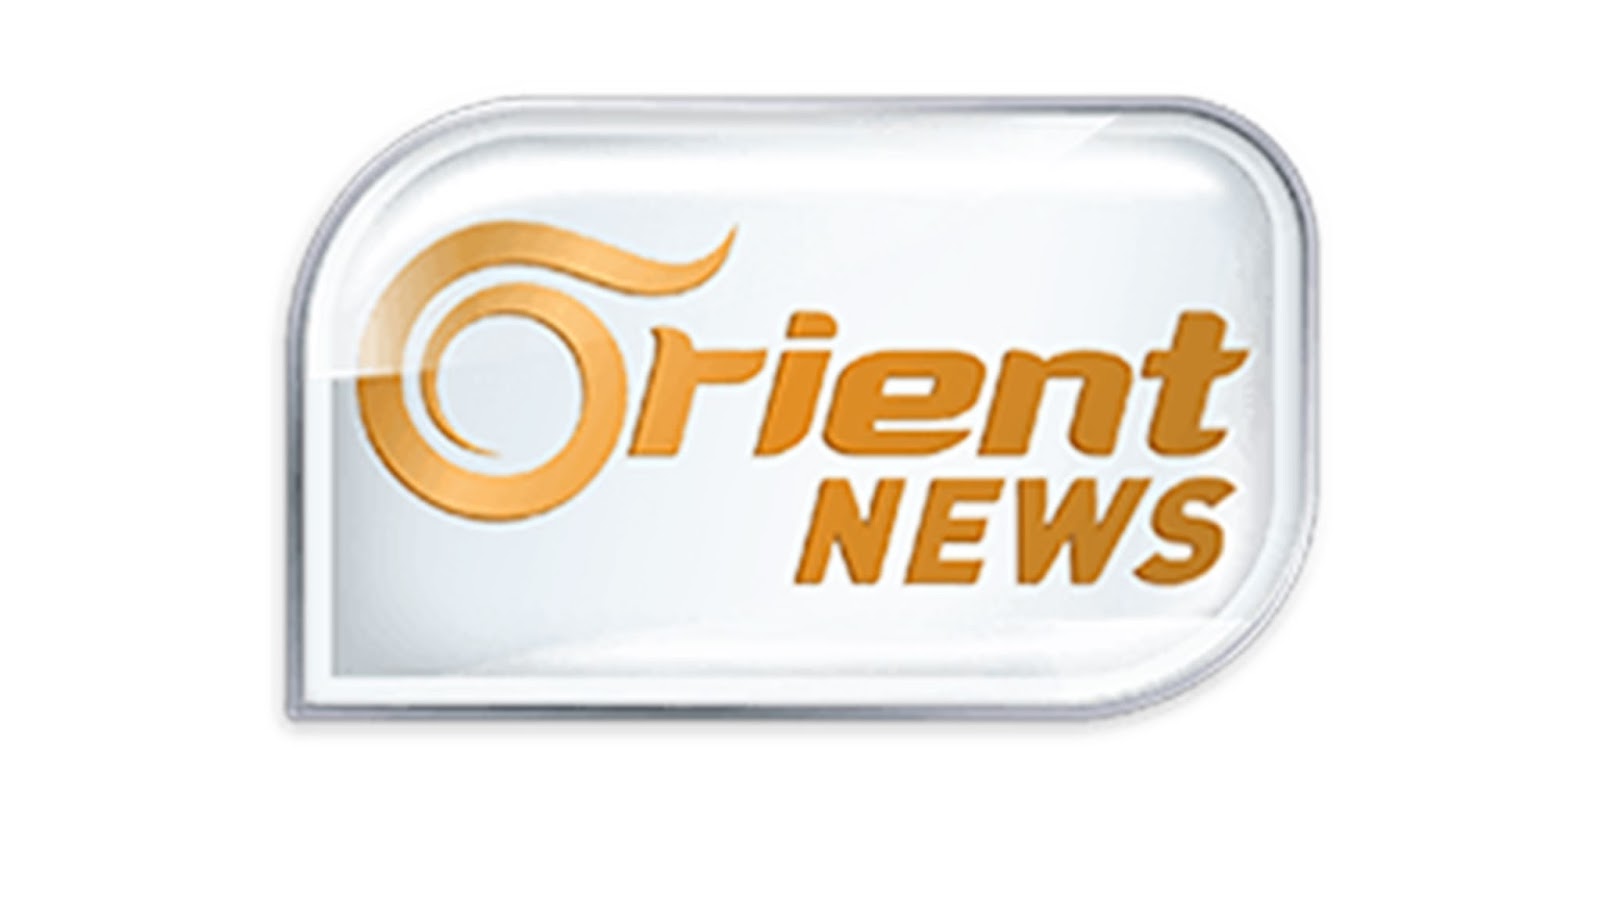 تردد قناة اورينت نيوز Orient News الحديث على النايل سات 2019 التردد الحديث